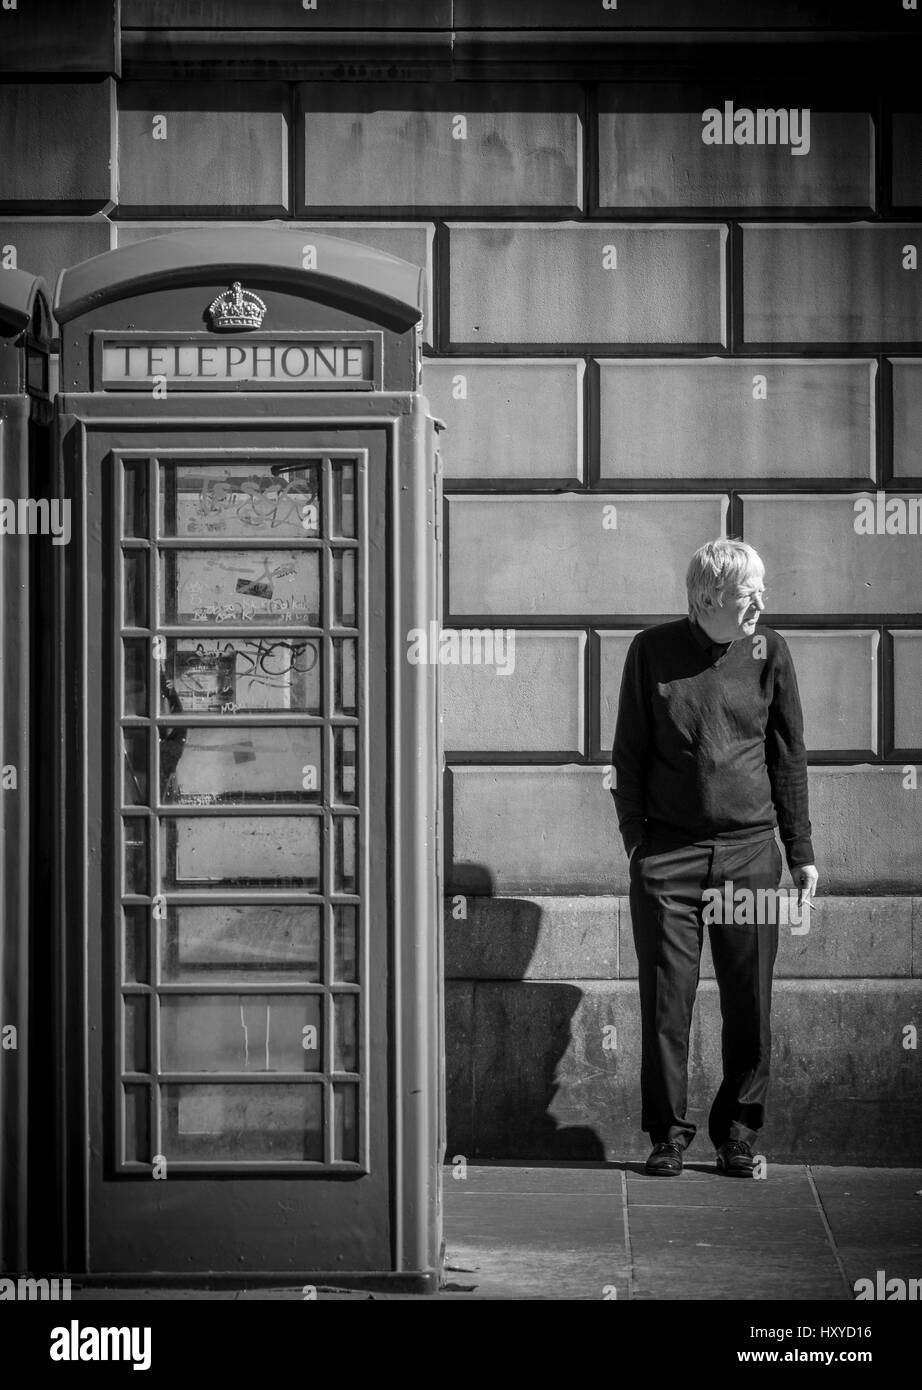 Reifer kaukasischer Mann, der neben einem traditionellen Telefonkasten steht und eine Zigarette raucht. Edinburgh. VEREINIGTES KÖNIGREICH Stockfoto